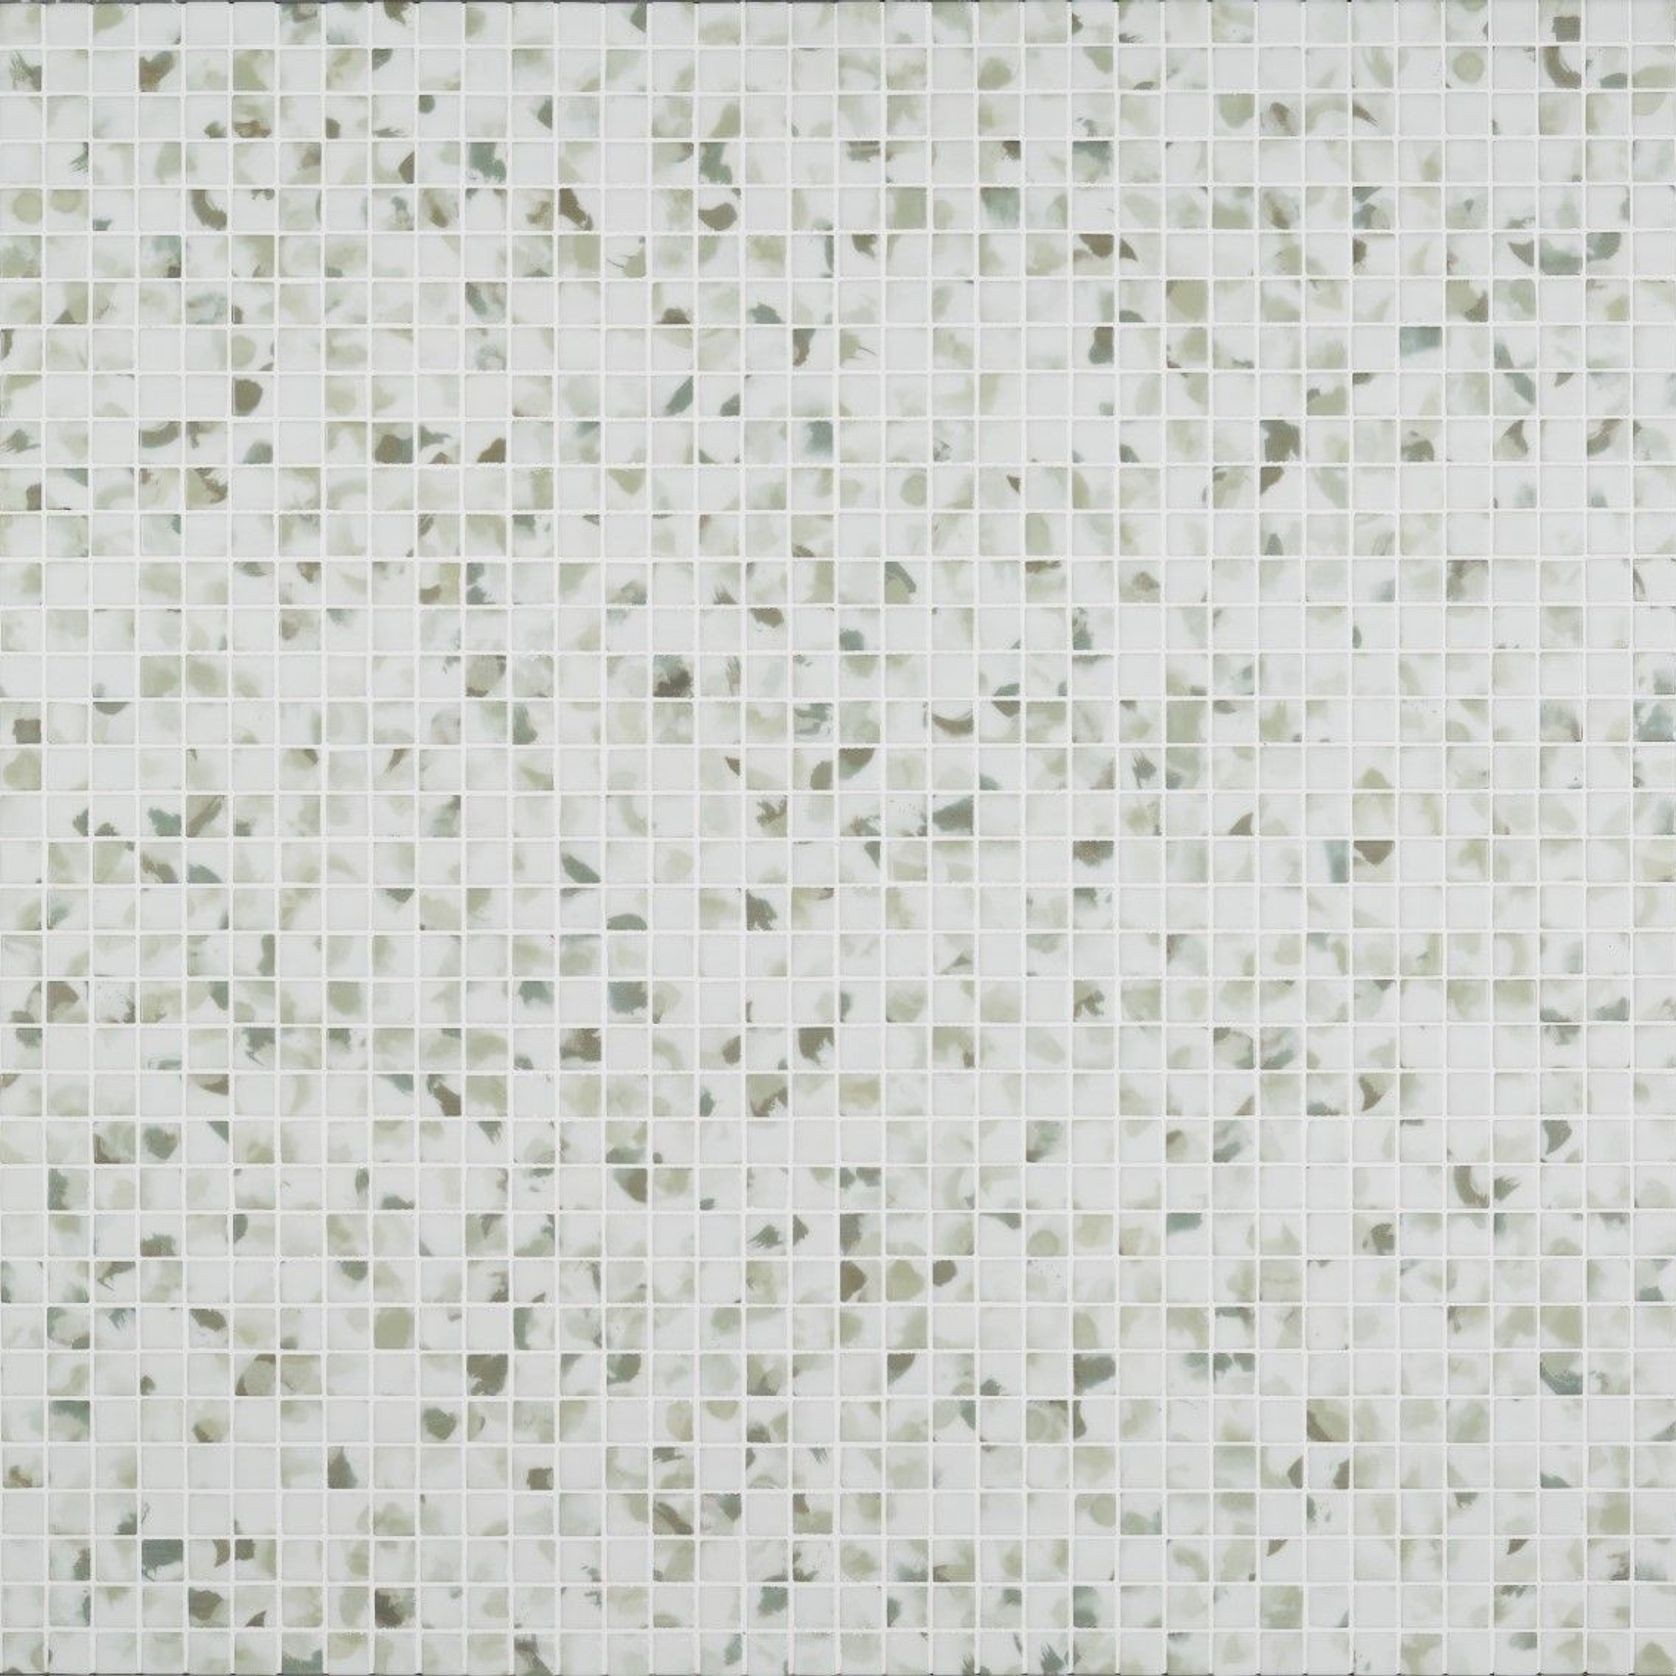 Blots Tile | Aquarelle Collection by Ezarri gallery detail image